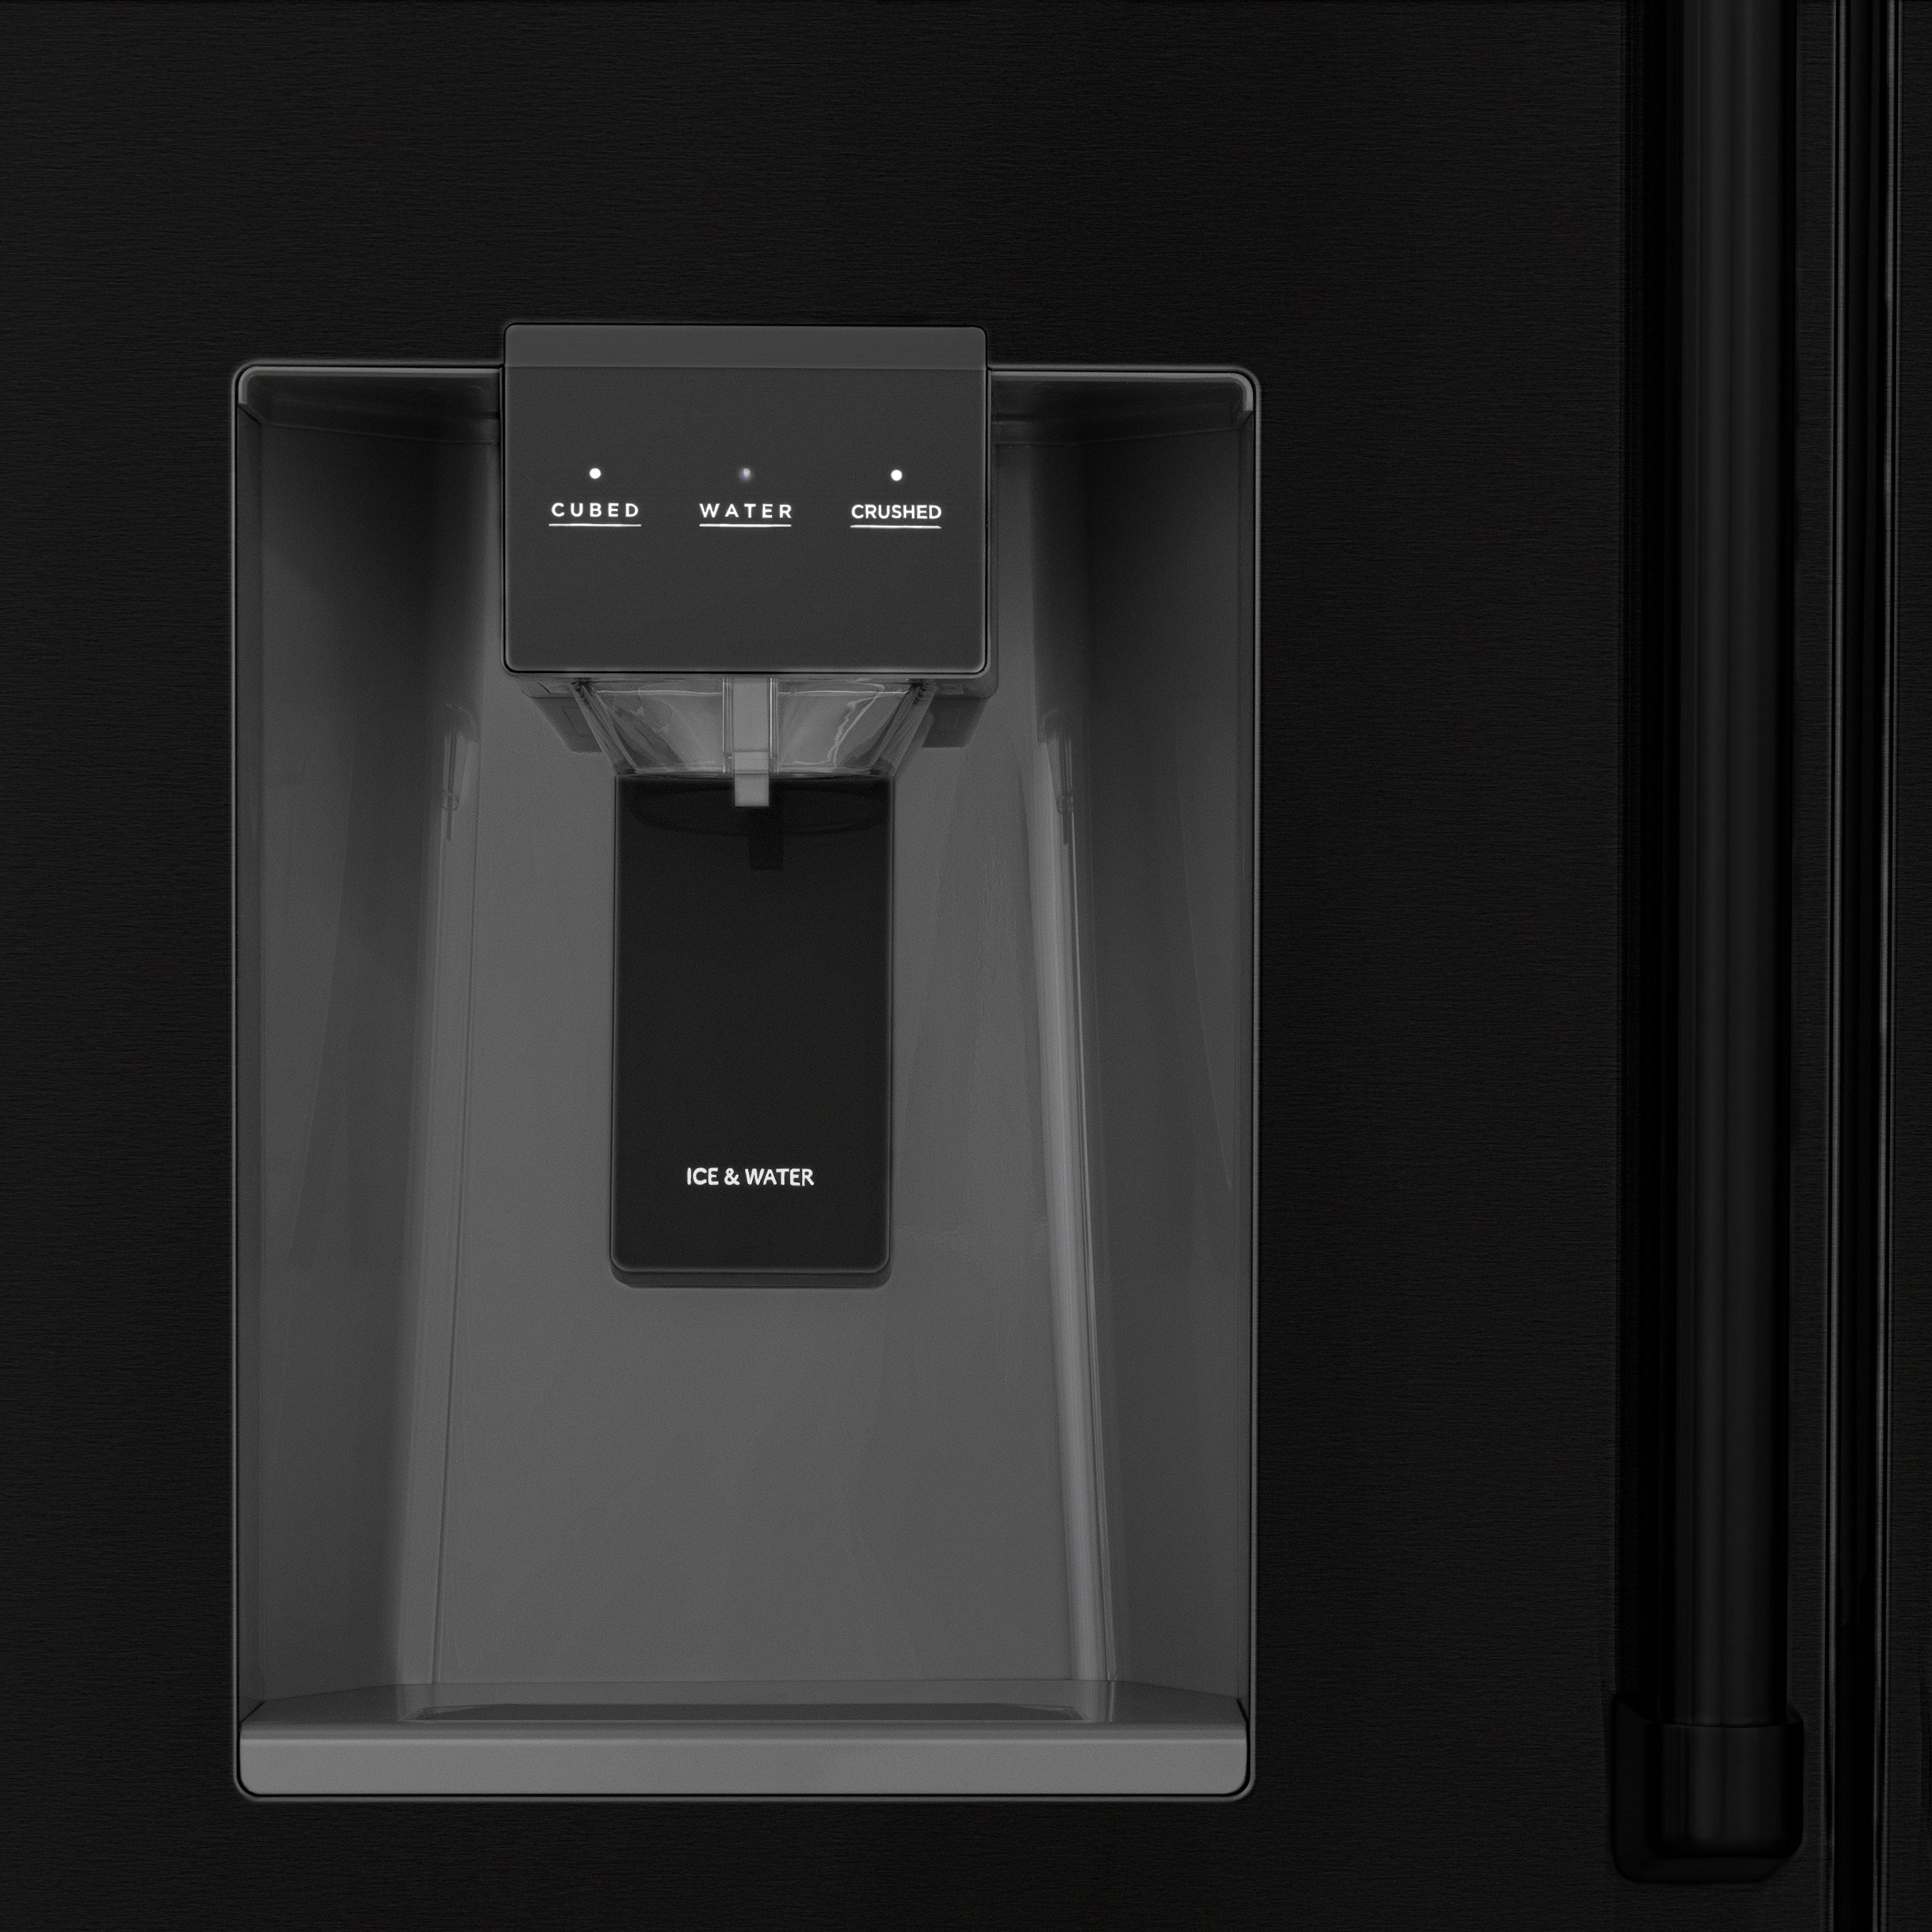 ZLINE 36" 21.6 cu. ft 4-Door French Door Refrigerator with Water and Ice Dispenser in Fingerprint Resistant Black Stainless Steel